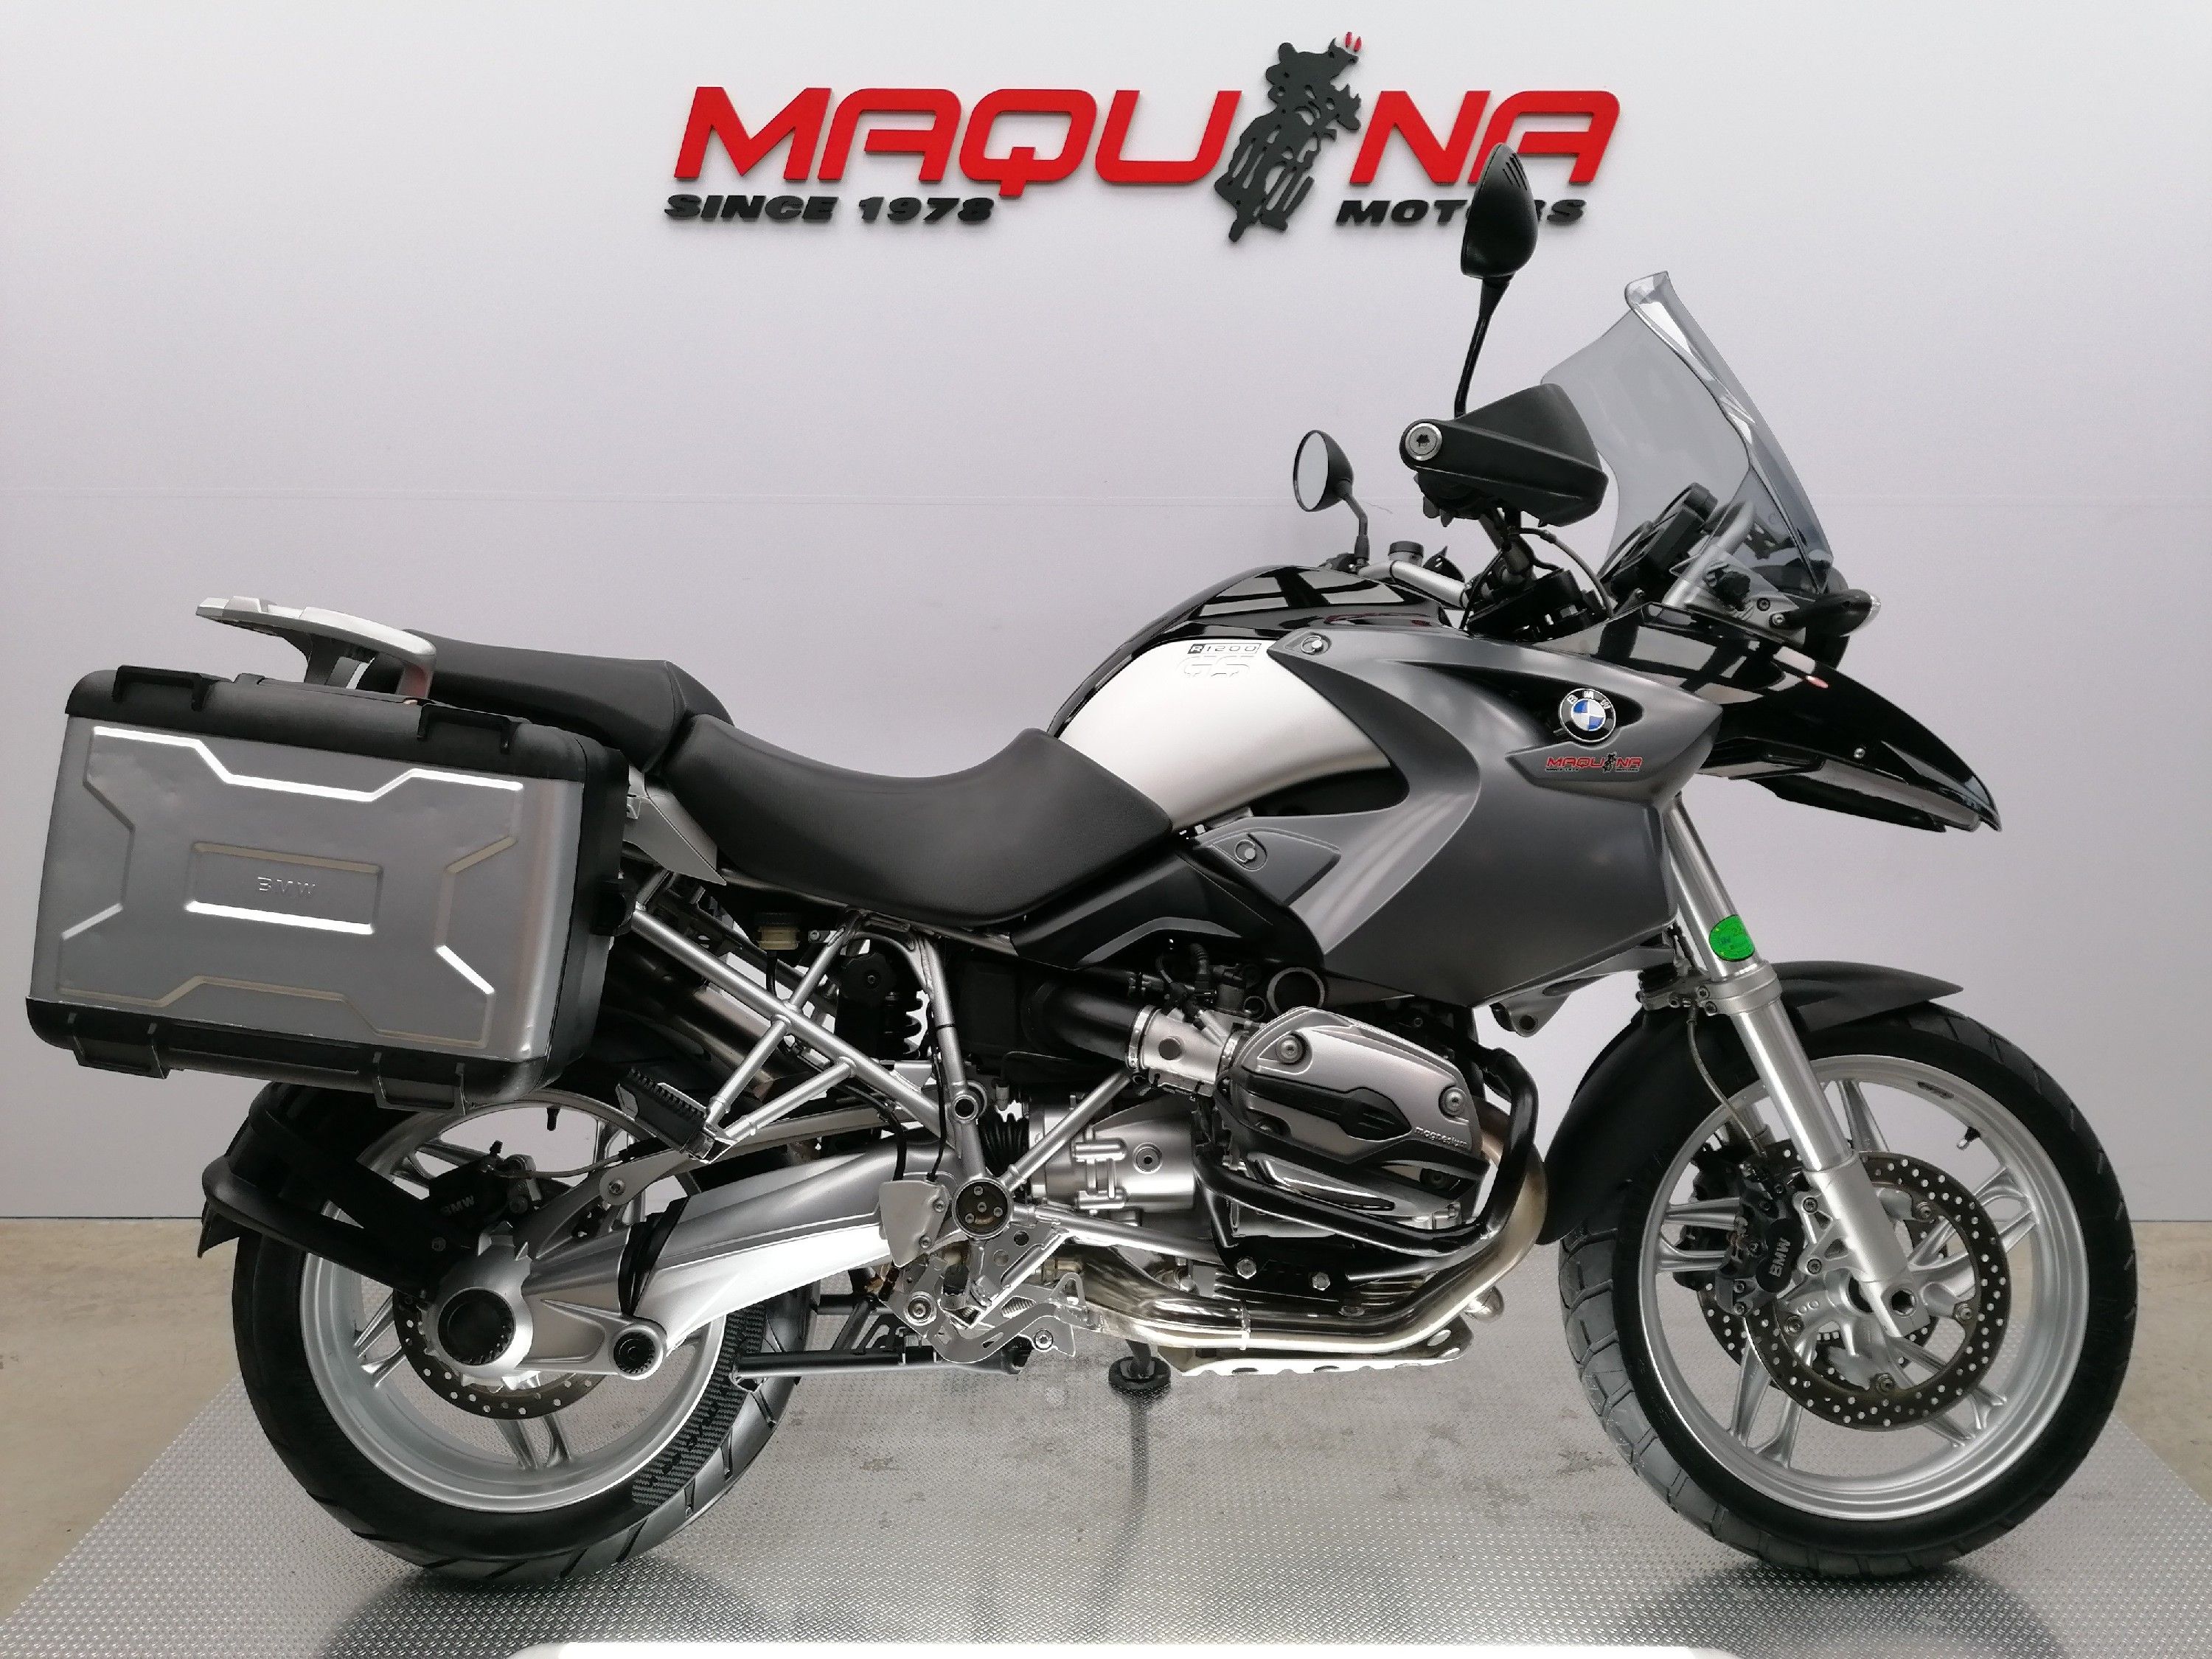 R 1200 GS – Maquina Motors motos